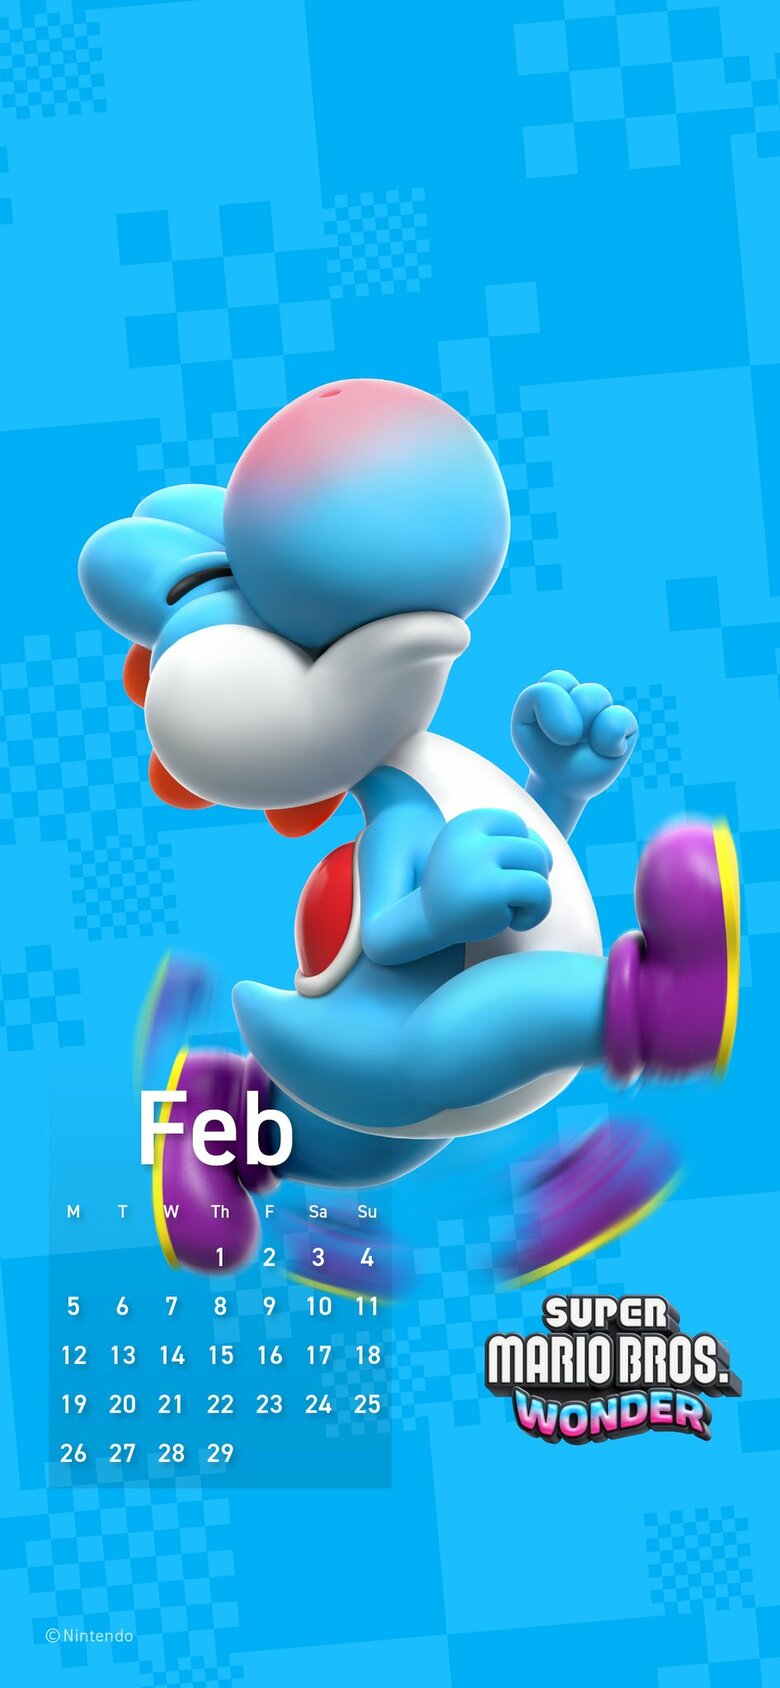 Nintendo Shares February Phone Calendar Featuring Mario Wonder's Light-Blue Yoshi